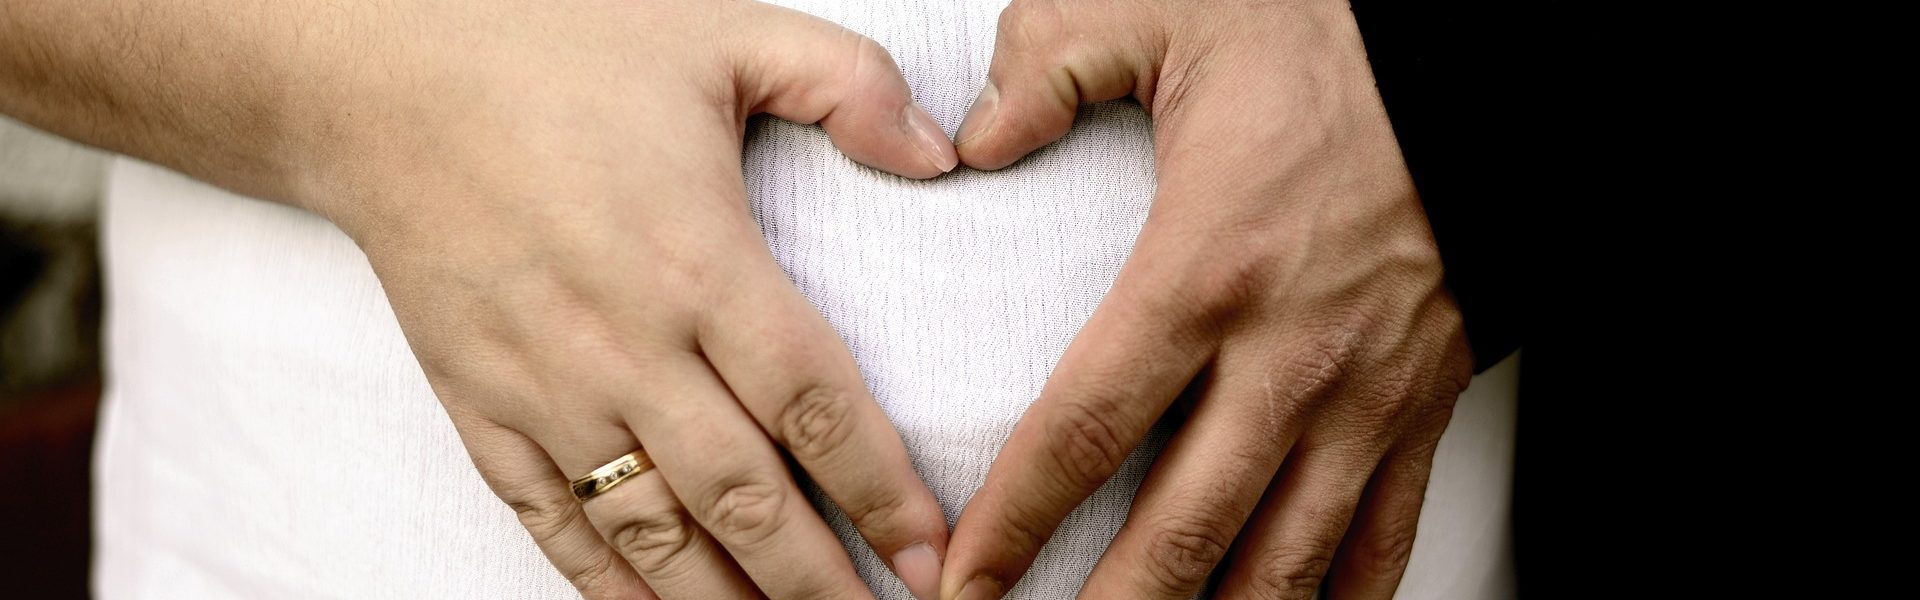 Problem nietrzymania moczu po porodzie – co robić